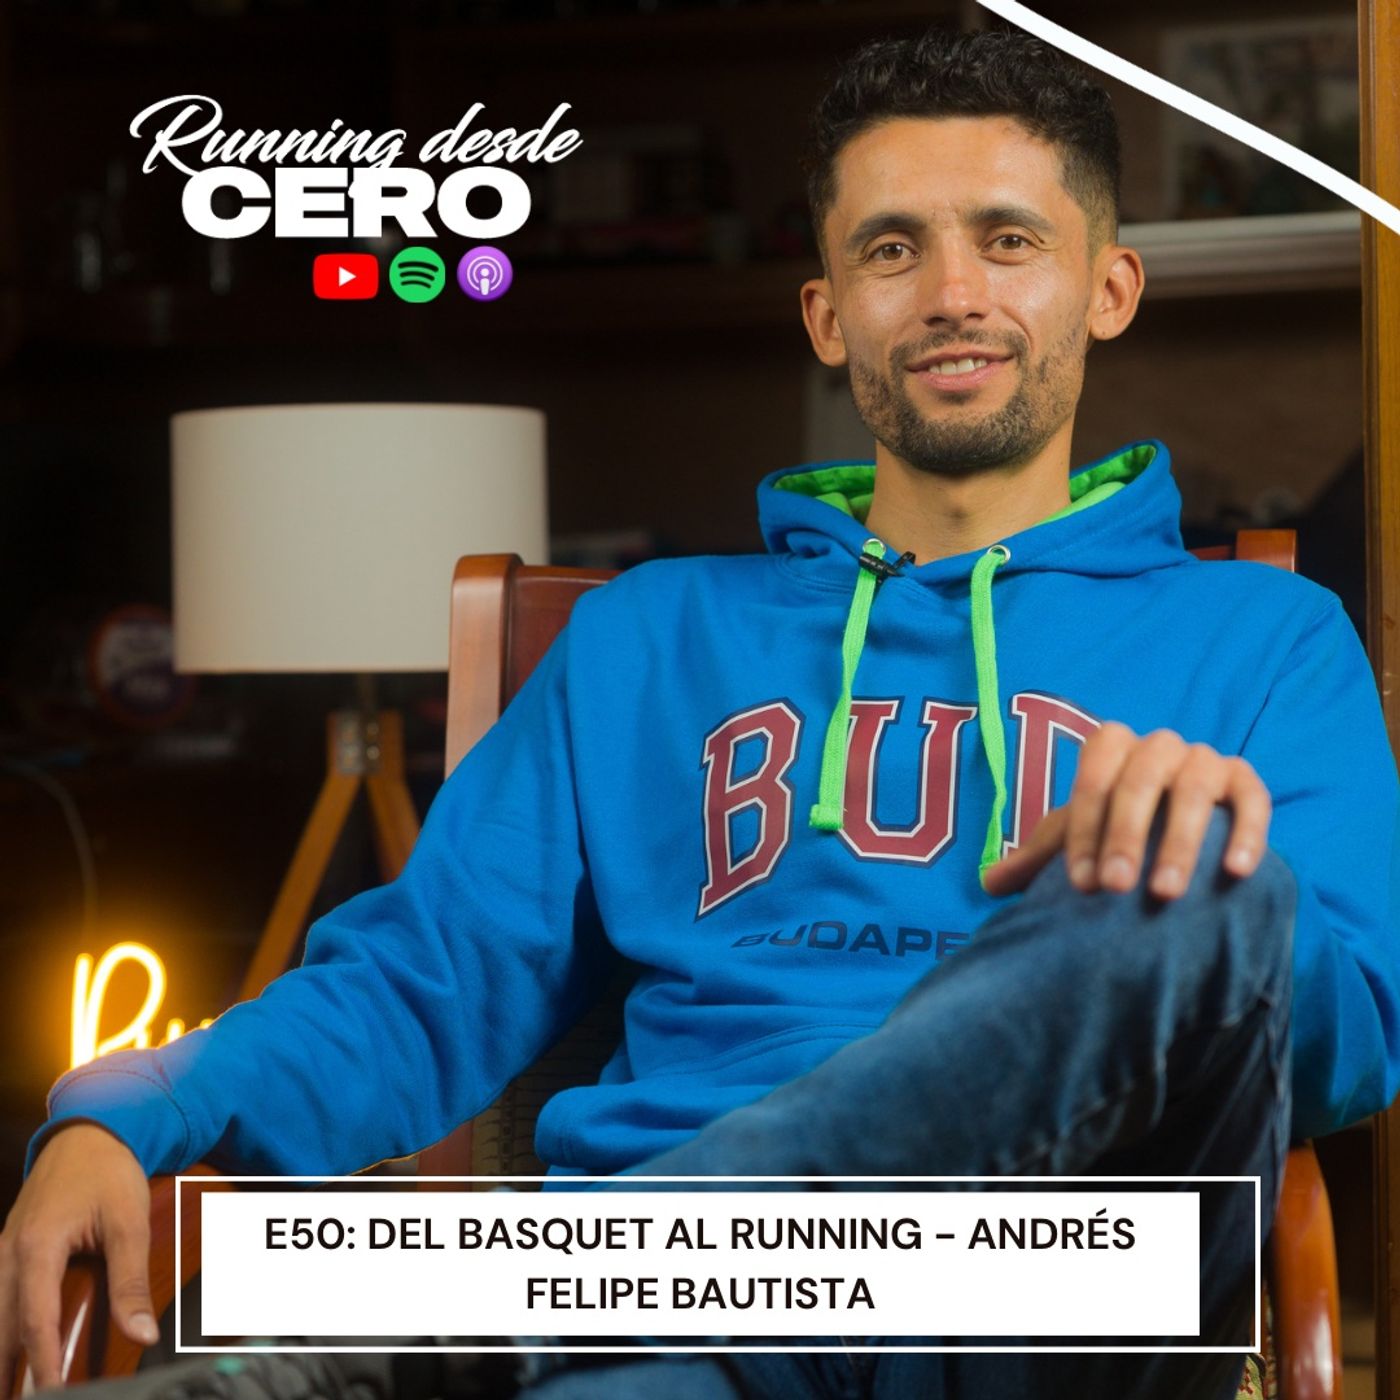 E50: Del básquet al running - Andrés Felipe Bautista